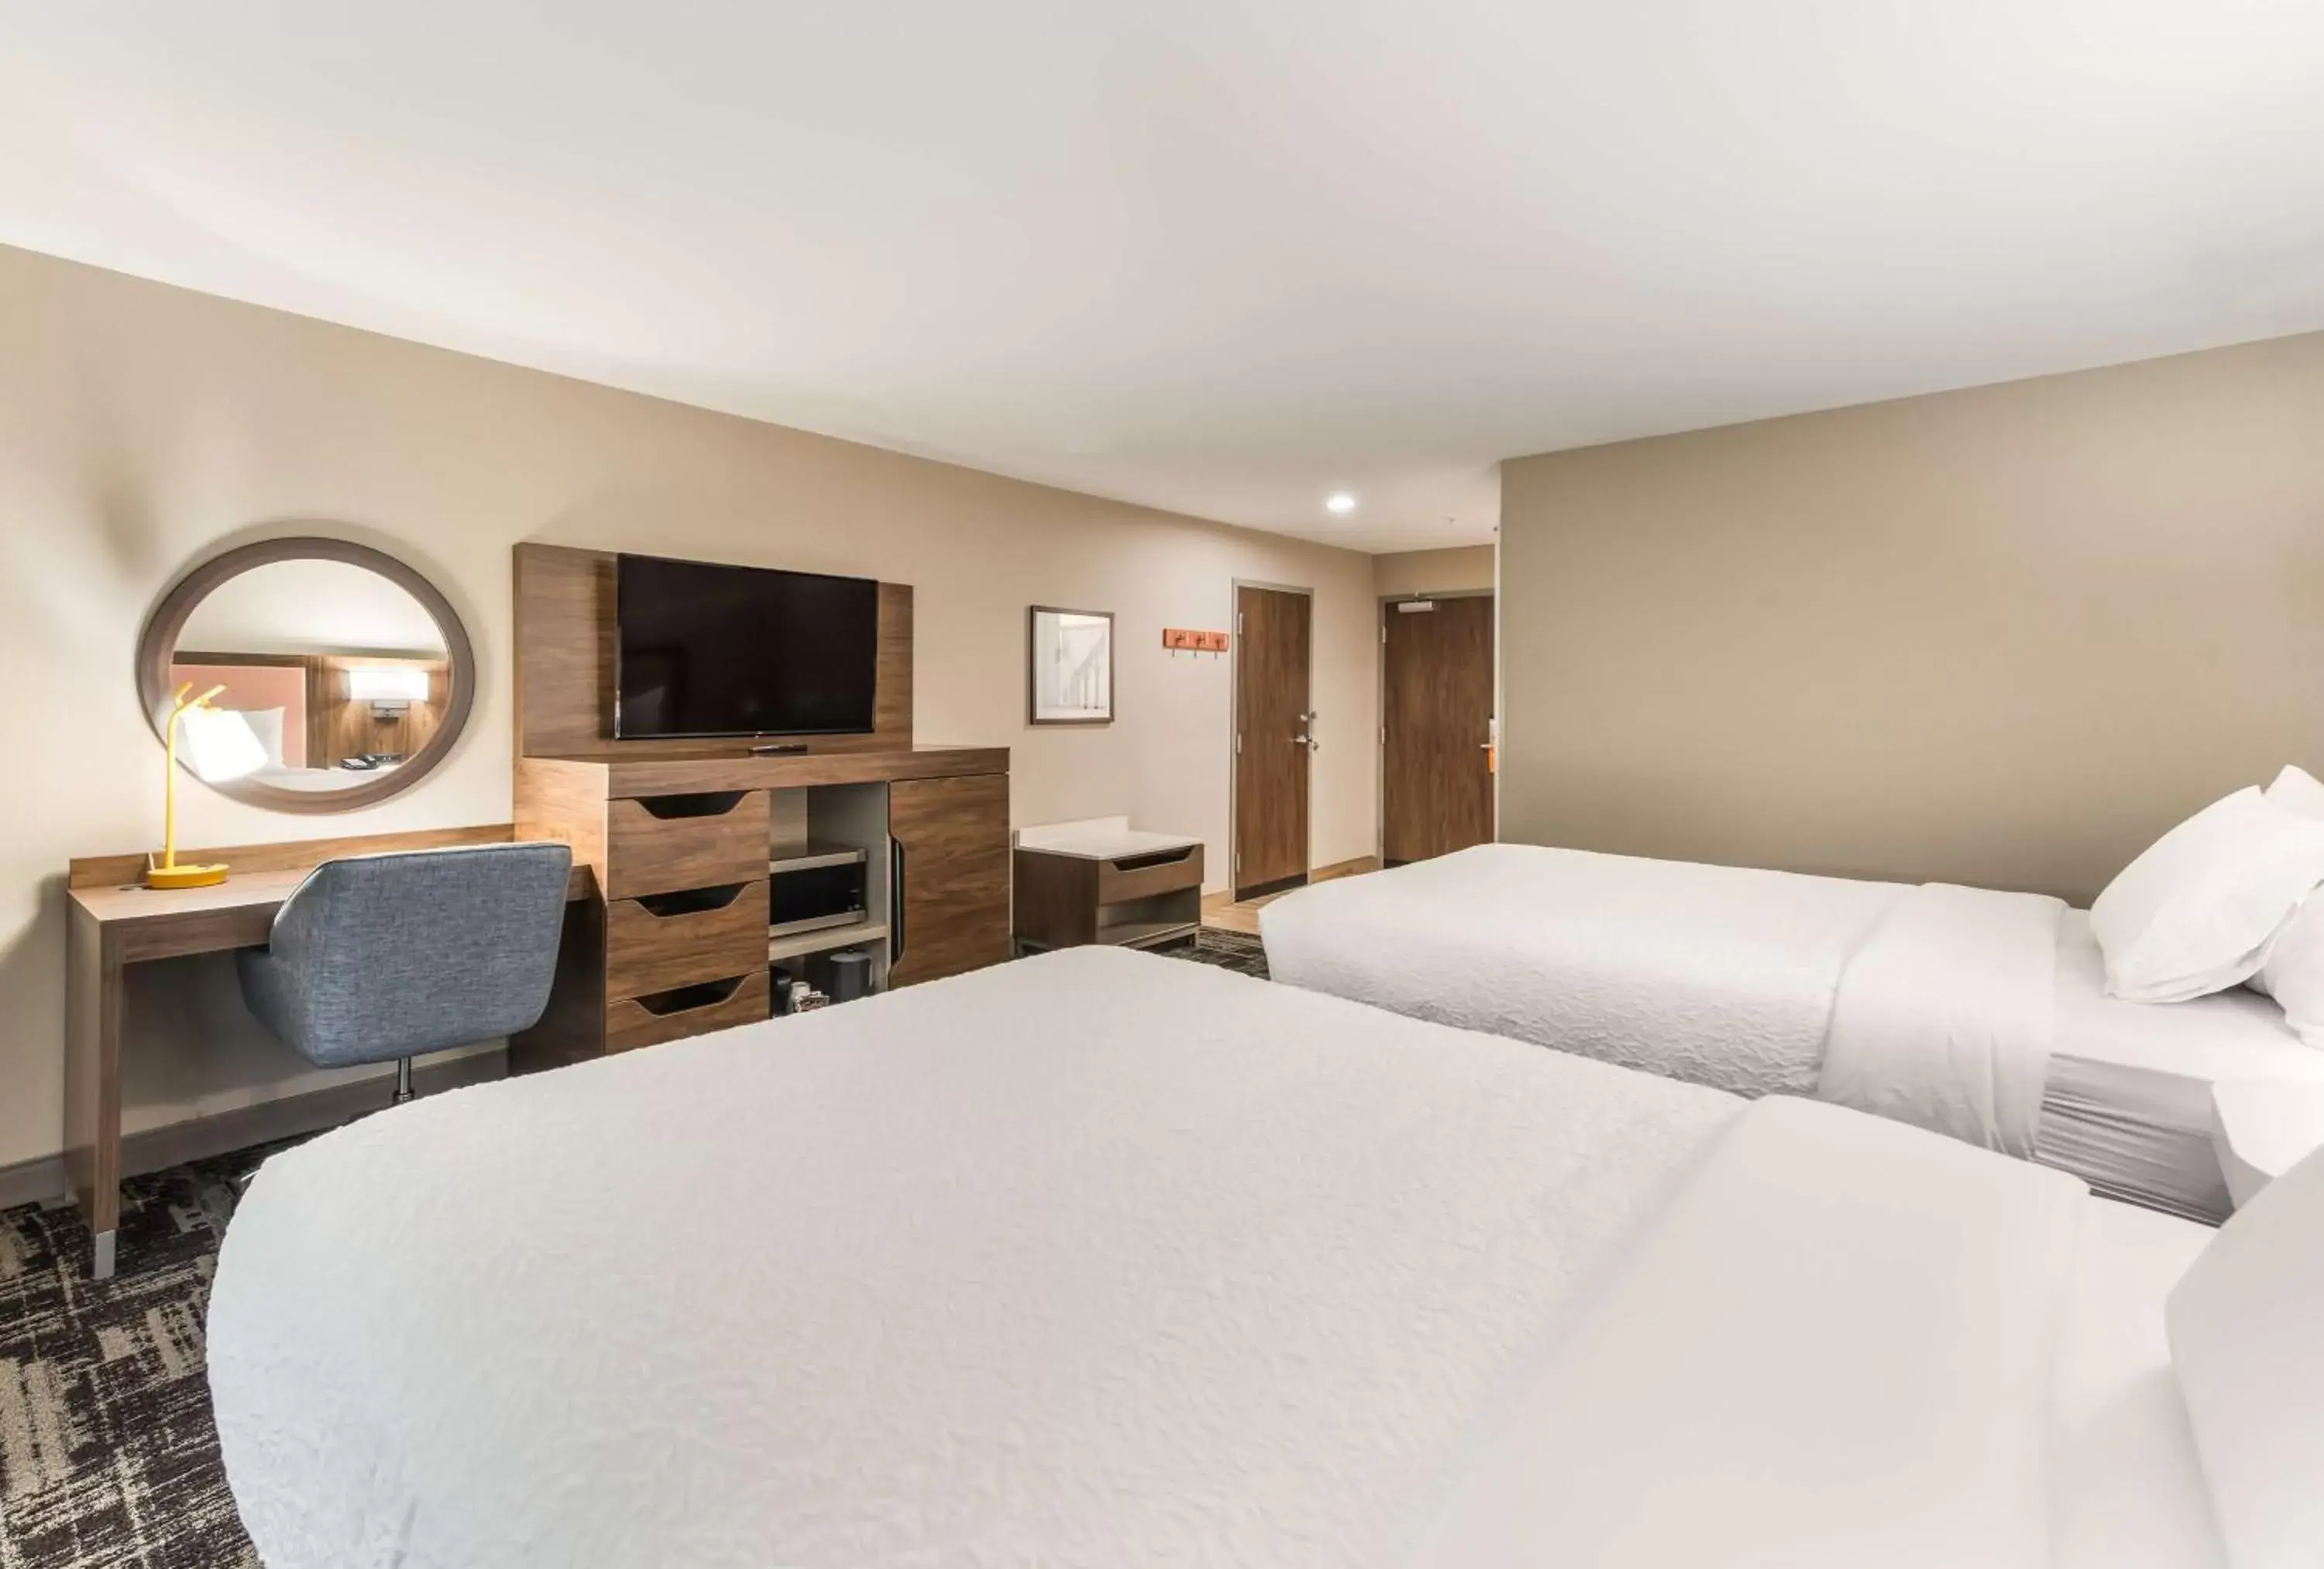 Bedroom in Hampton Inn & Suites Benton Harbor, MI